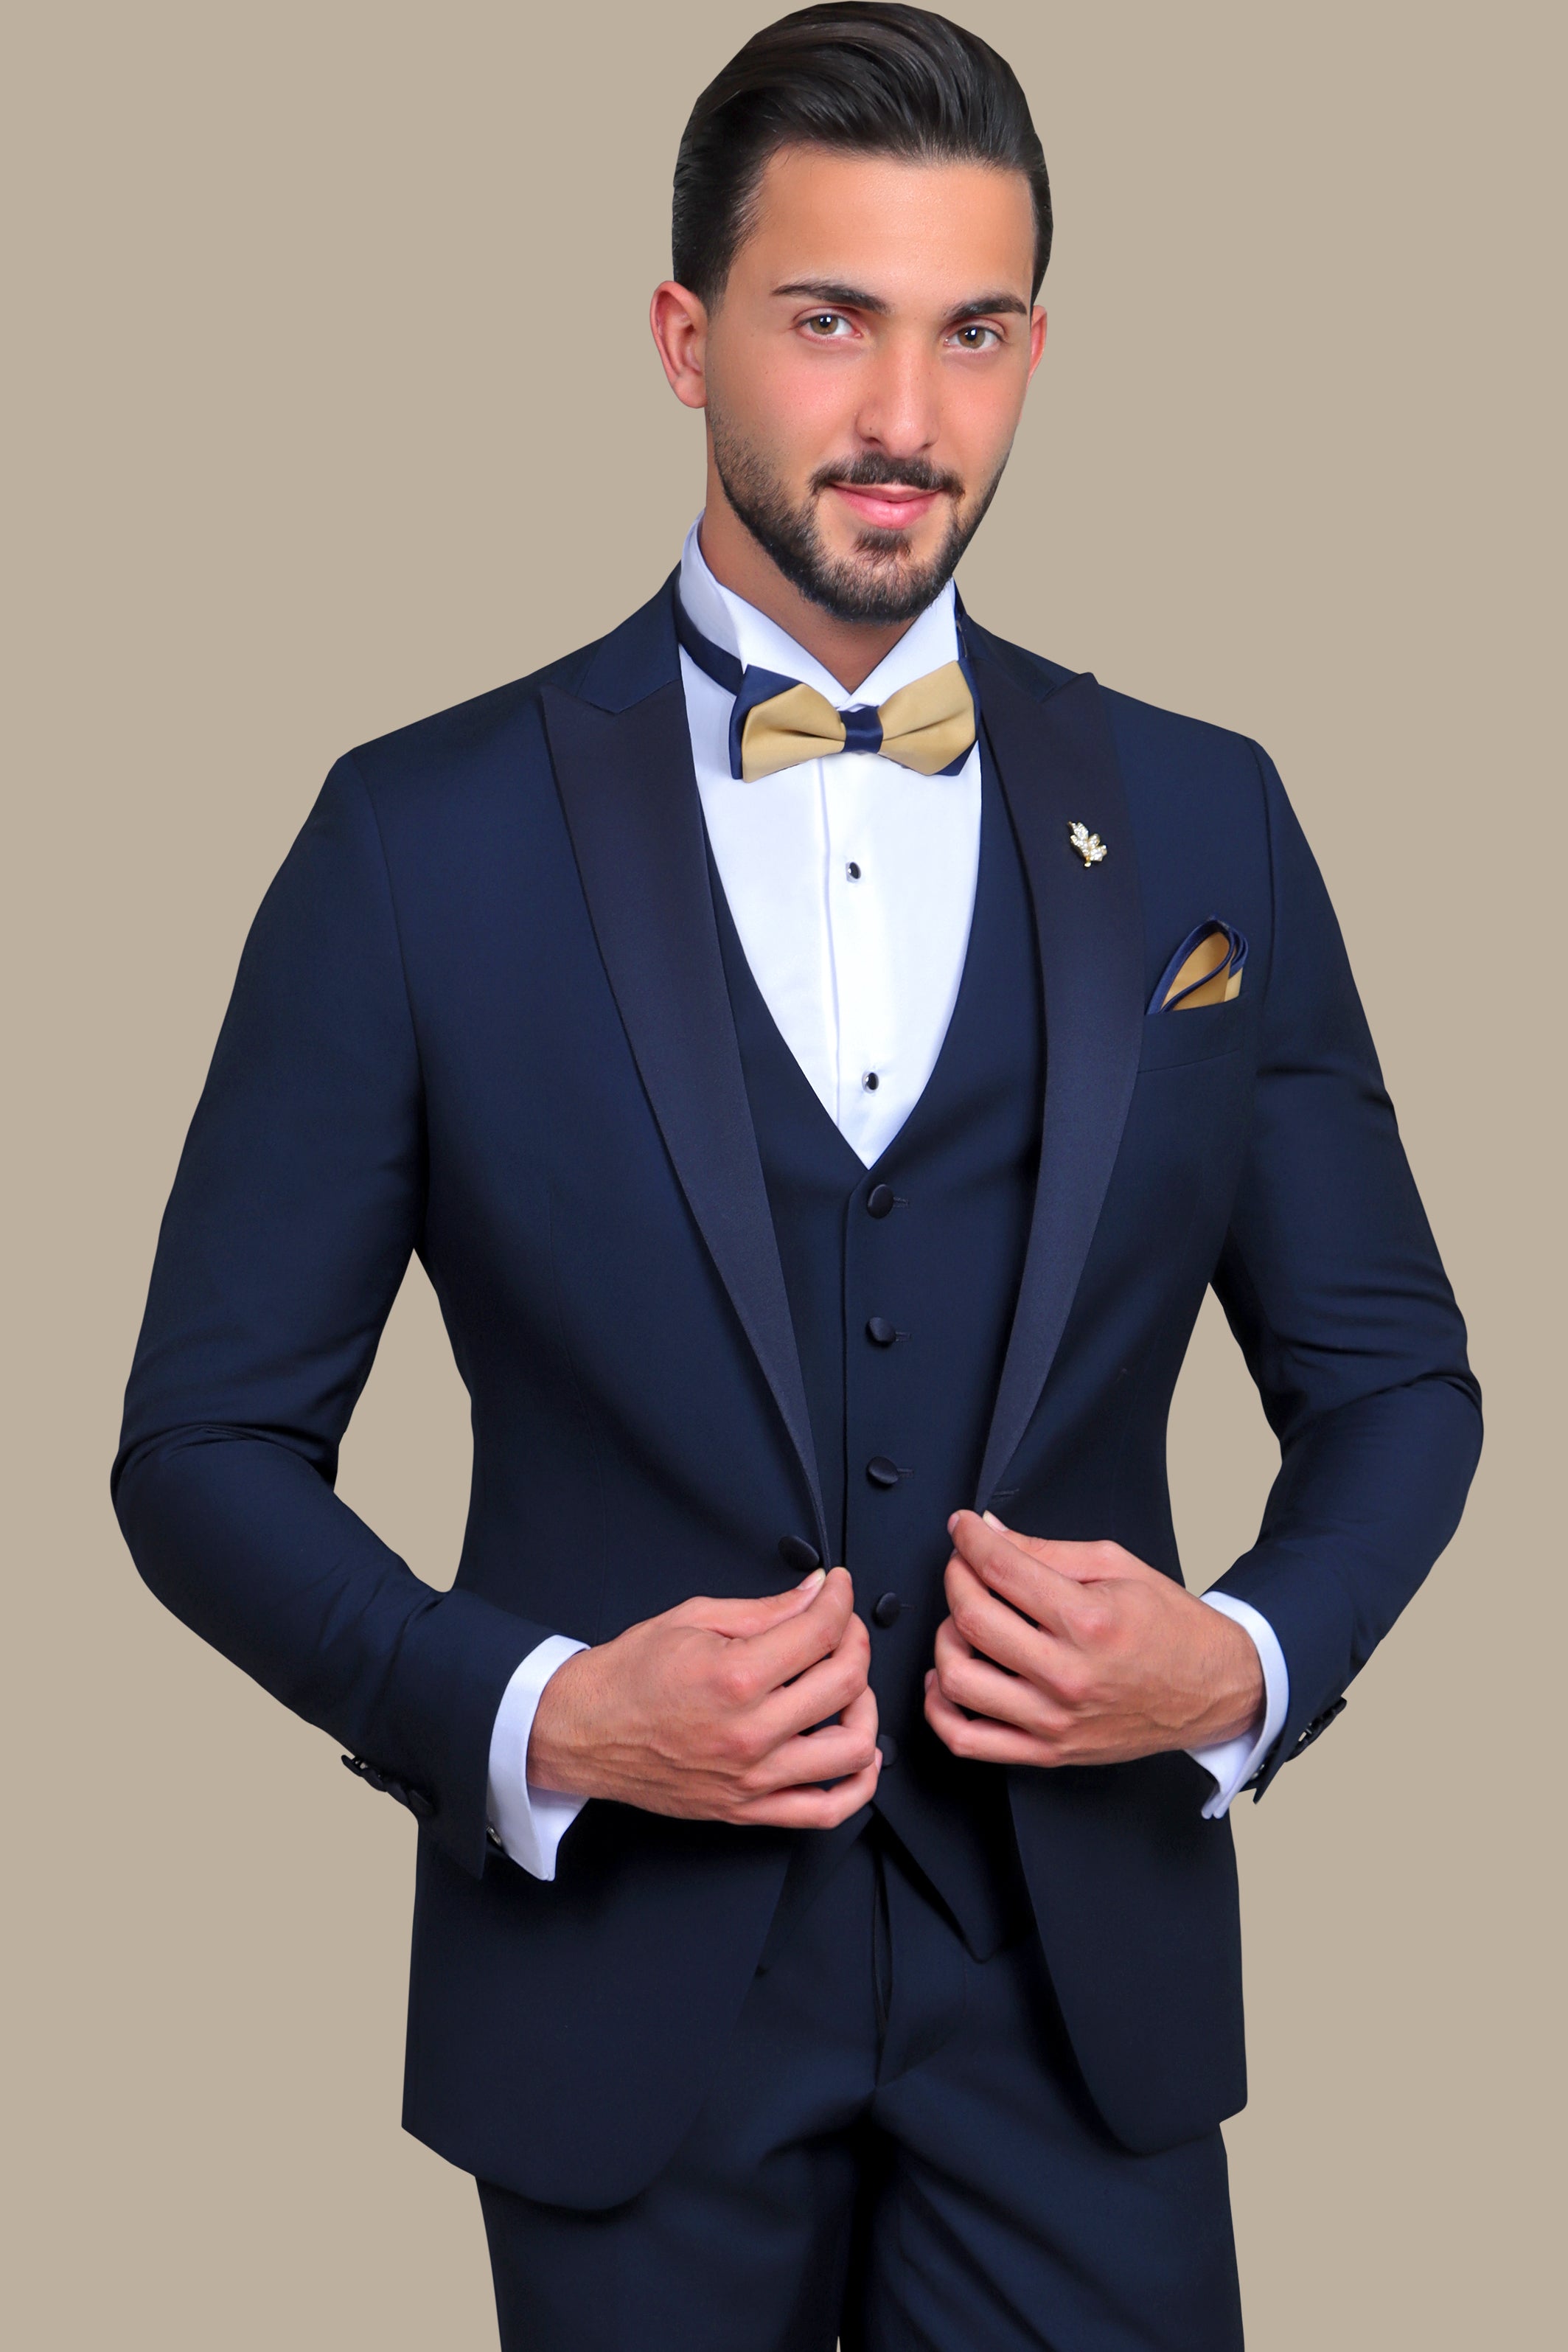 Effortless Elegance: Light Navy Peak Lapel 3-Piece Tuxedo for Timeless Style